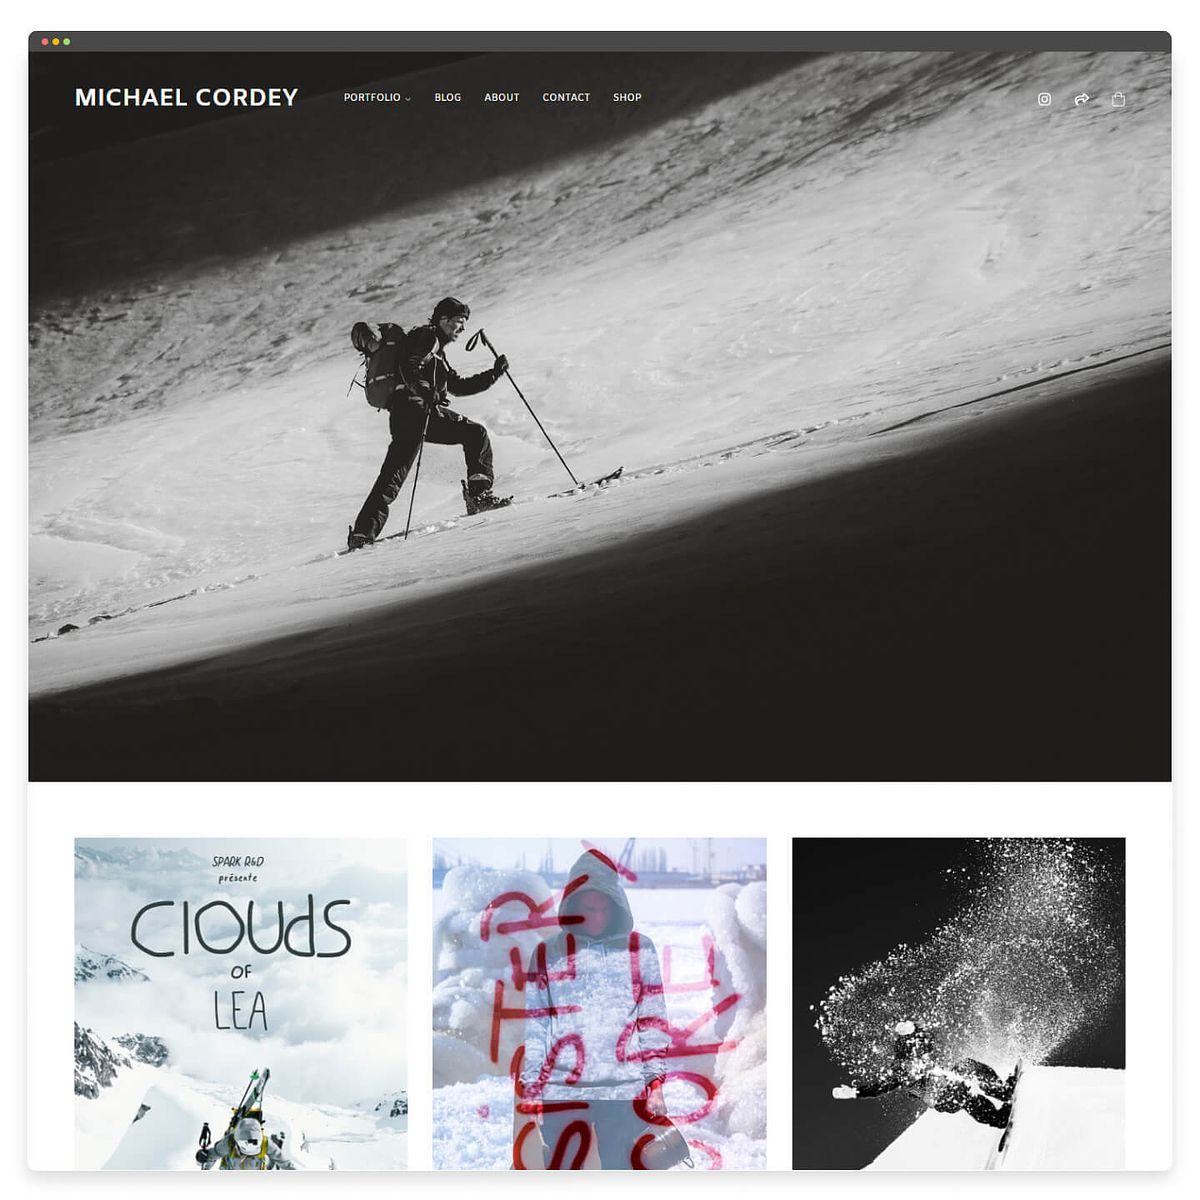 Michael Kordey's blog website